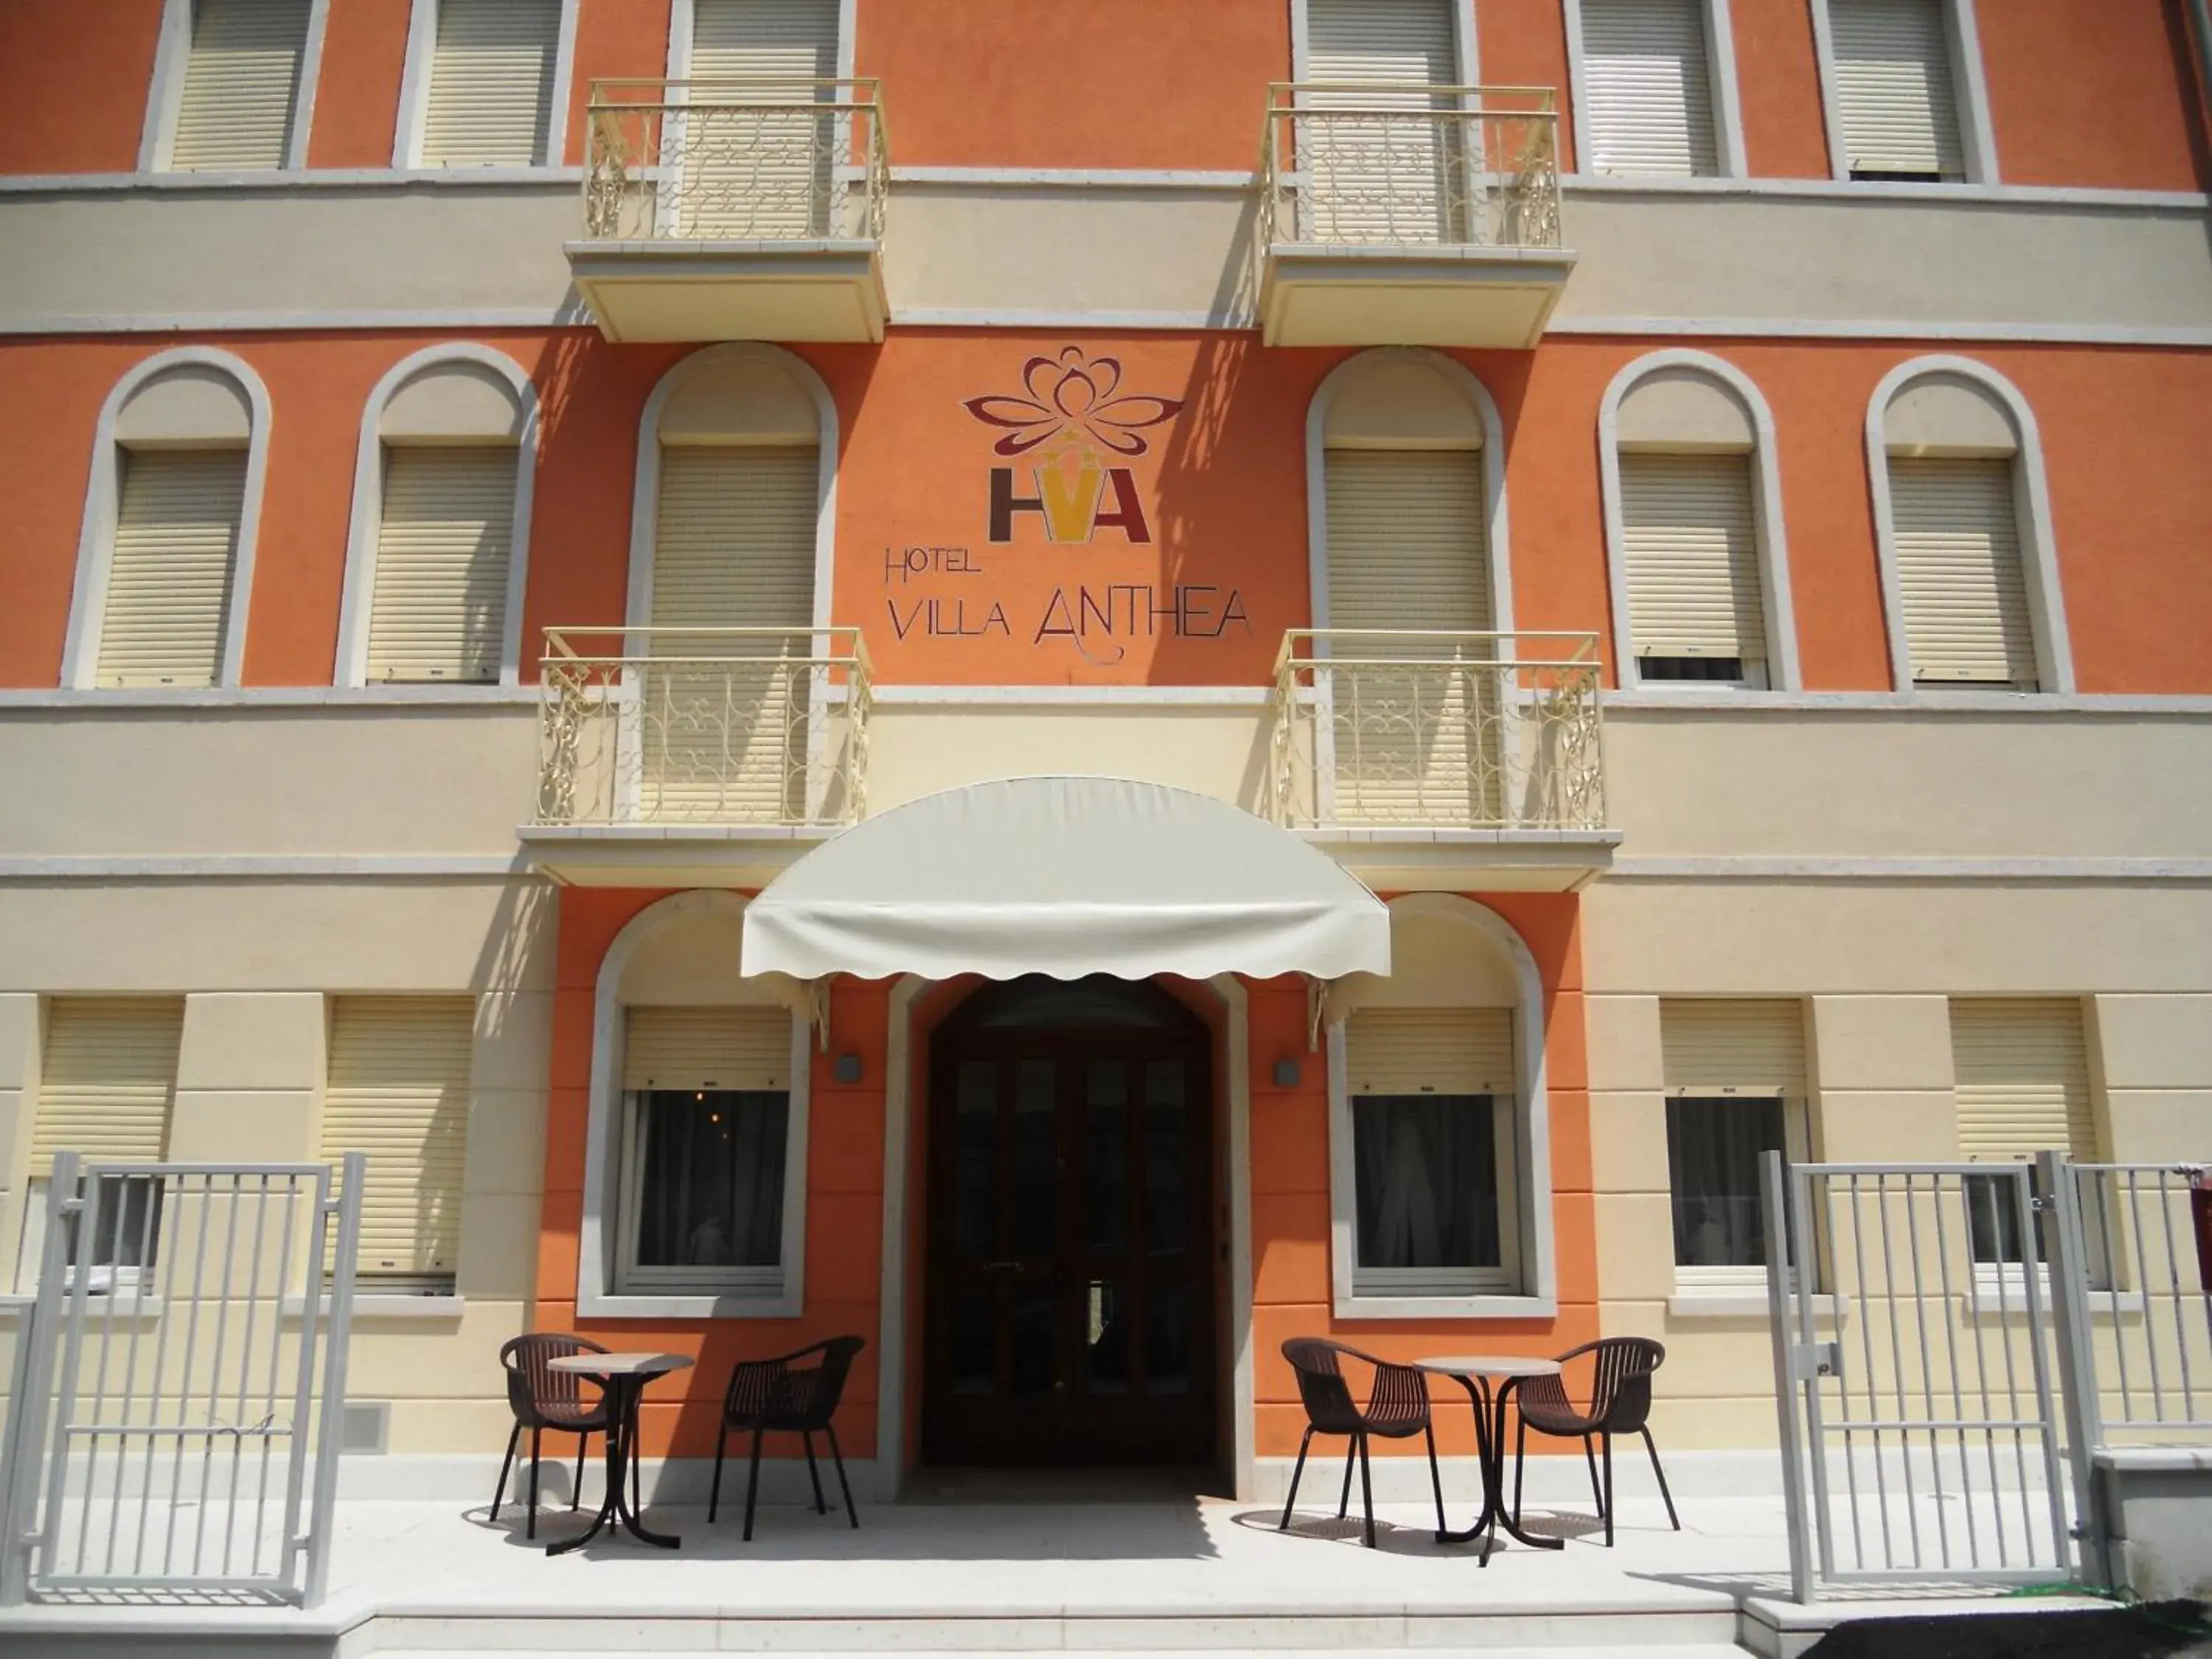 Facade/entrance in Hotel Villa Anthea